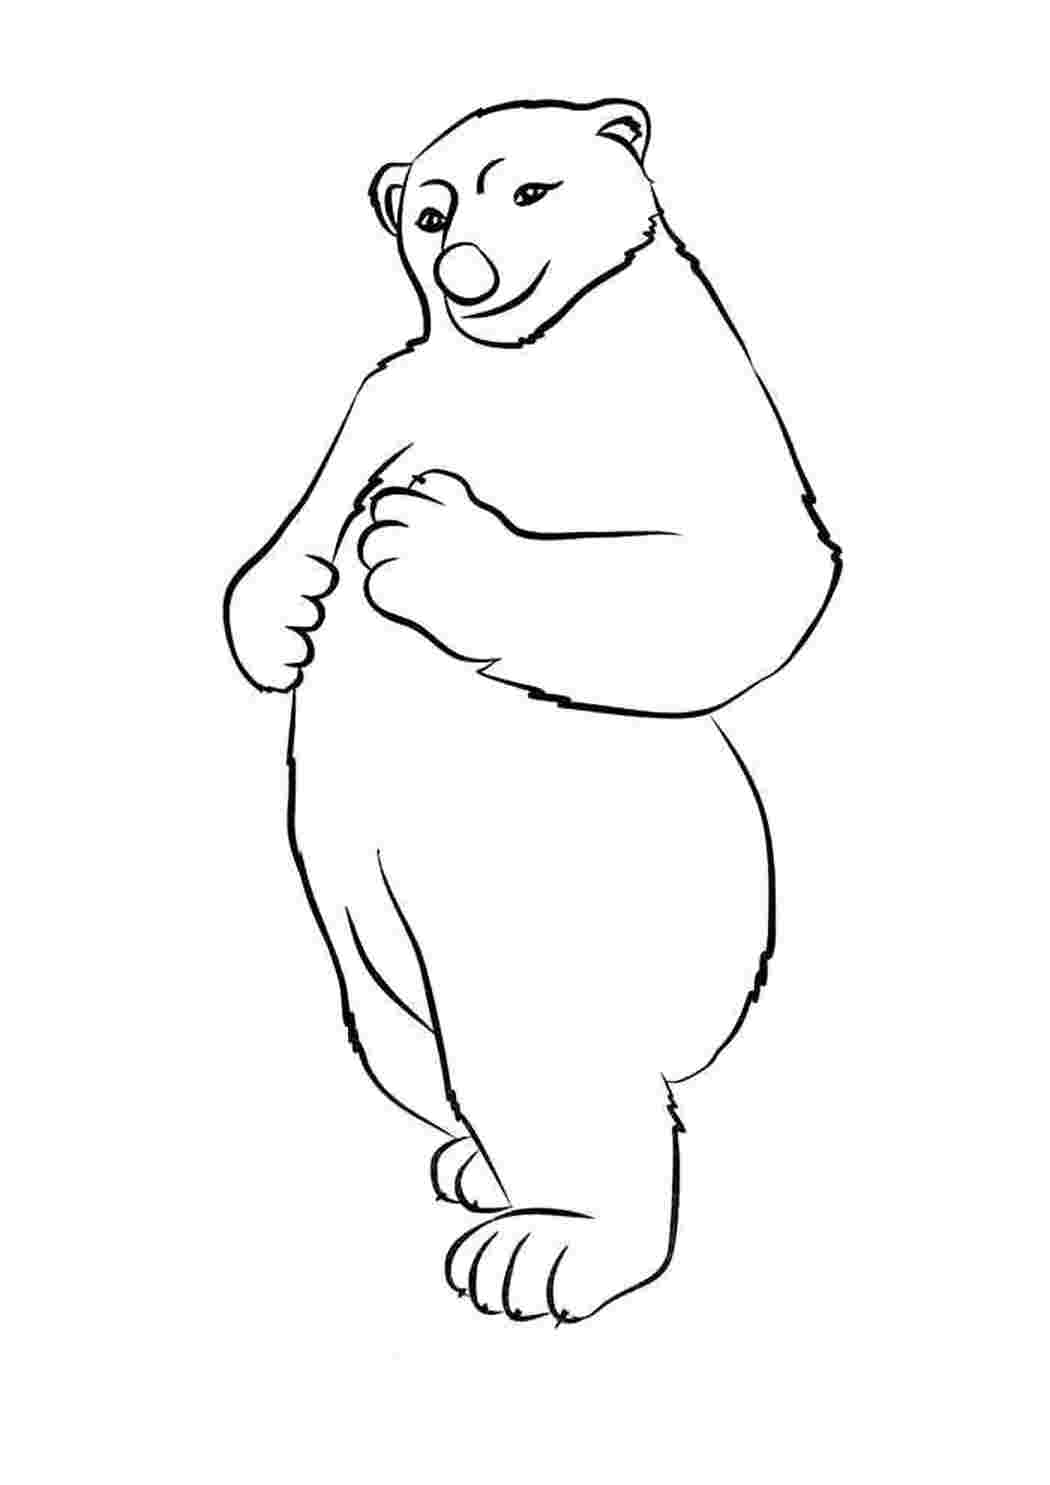 Белый медведь рисунок Изображения – скачать бесплатно на Freepik